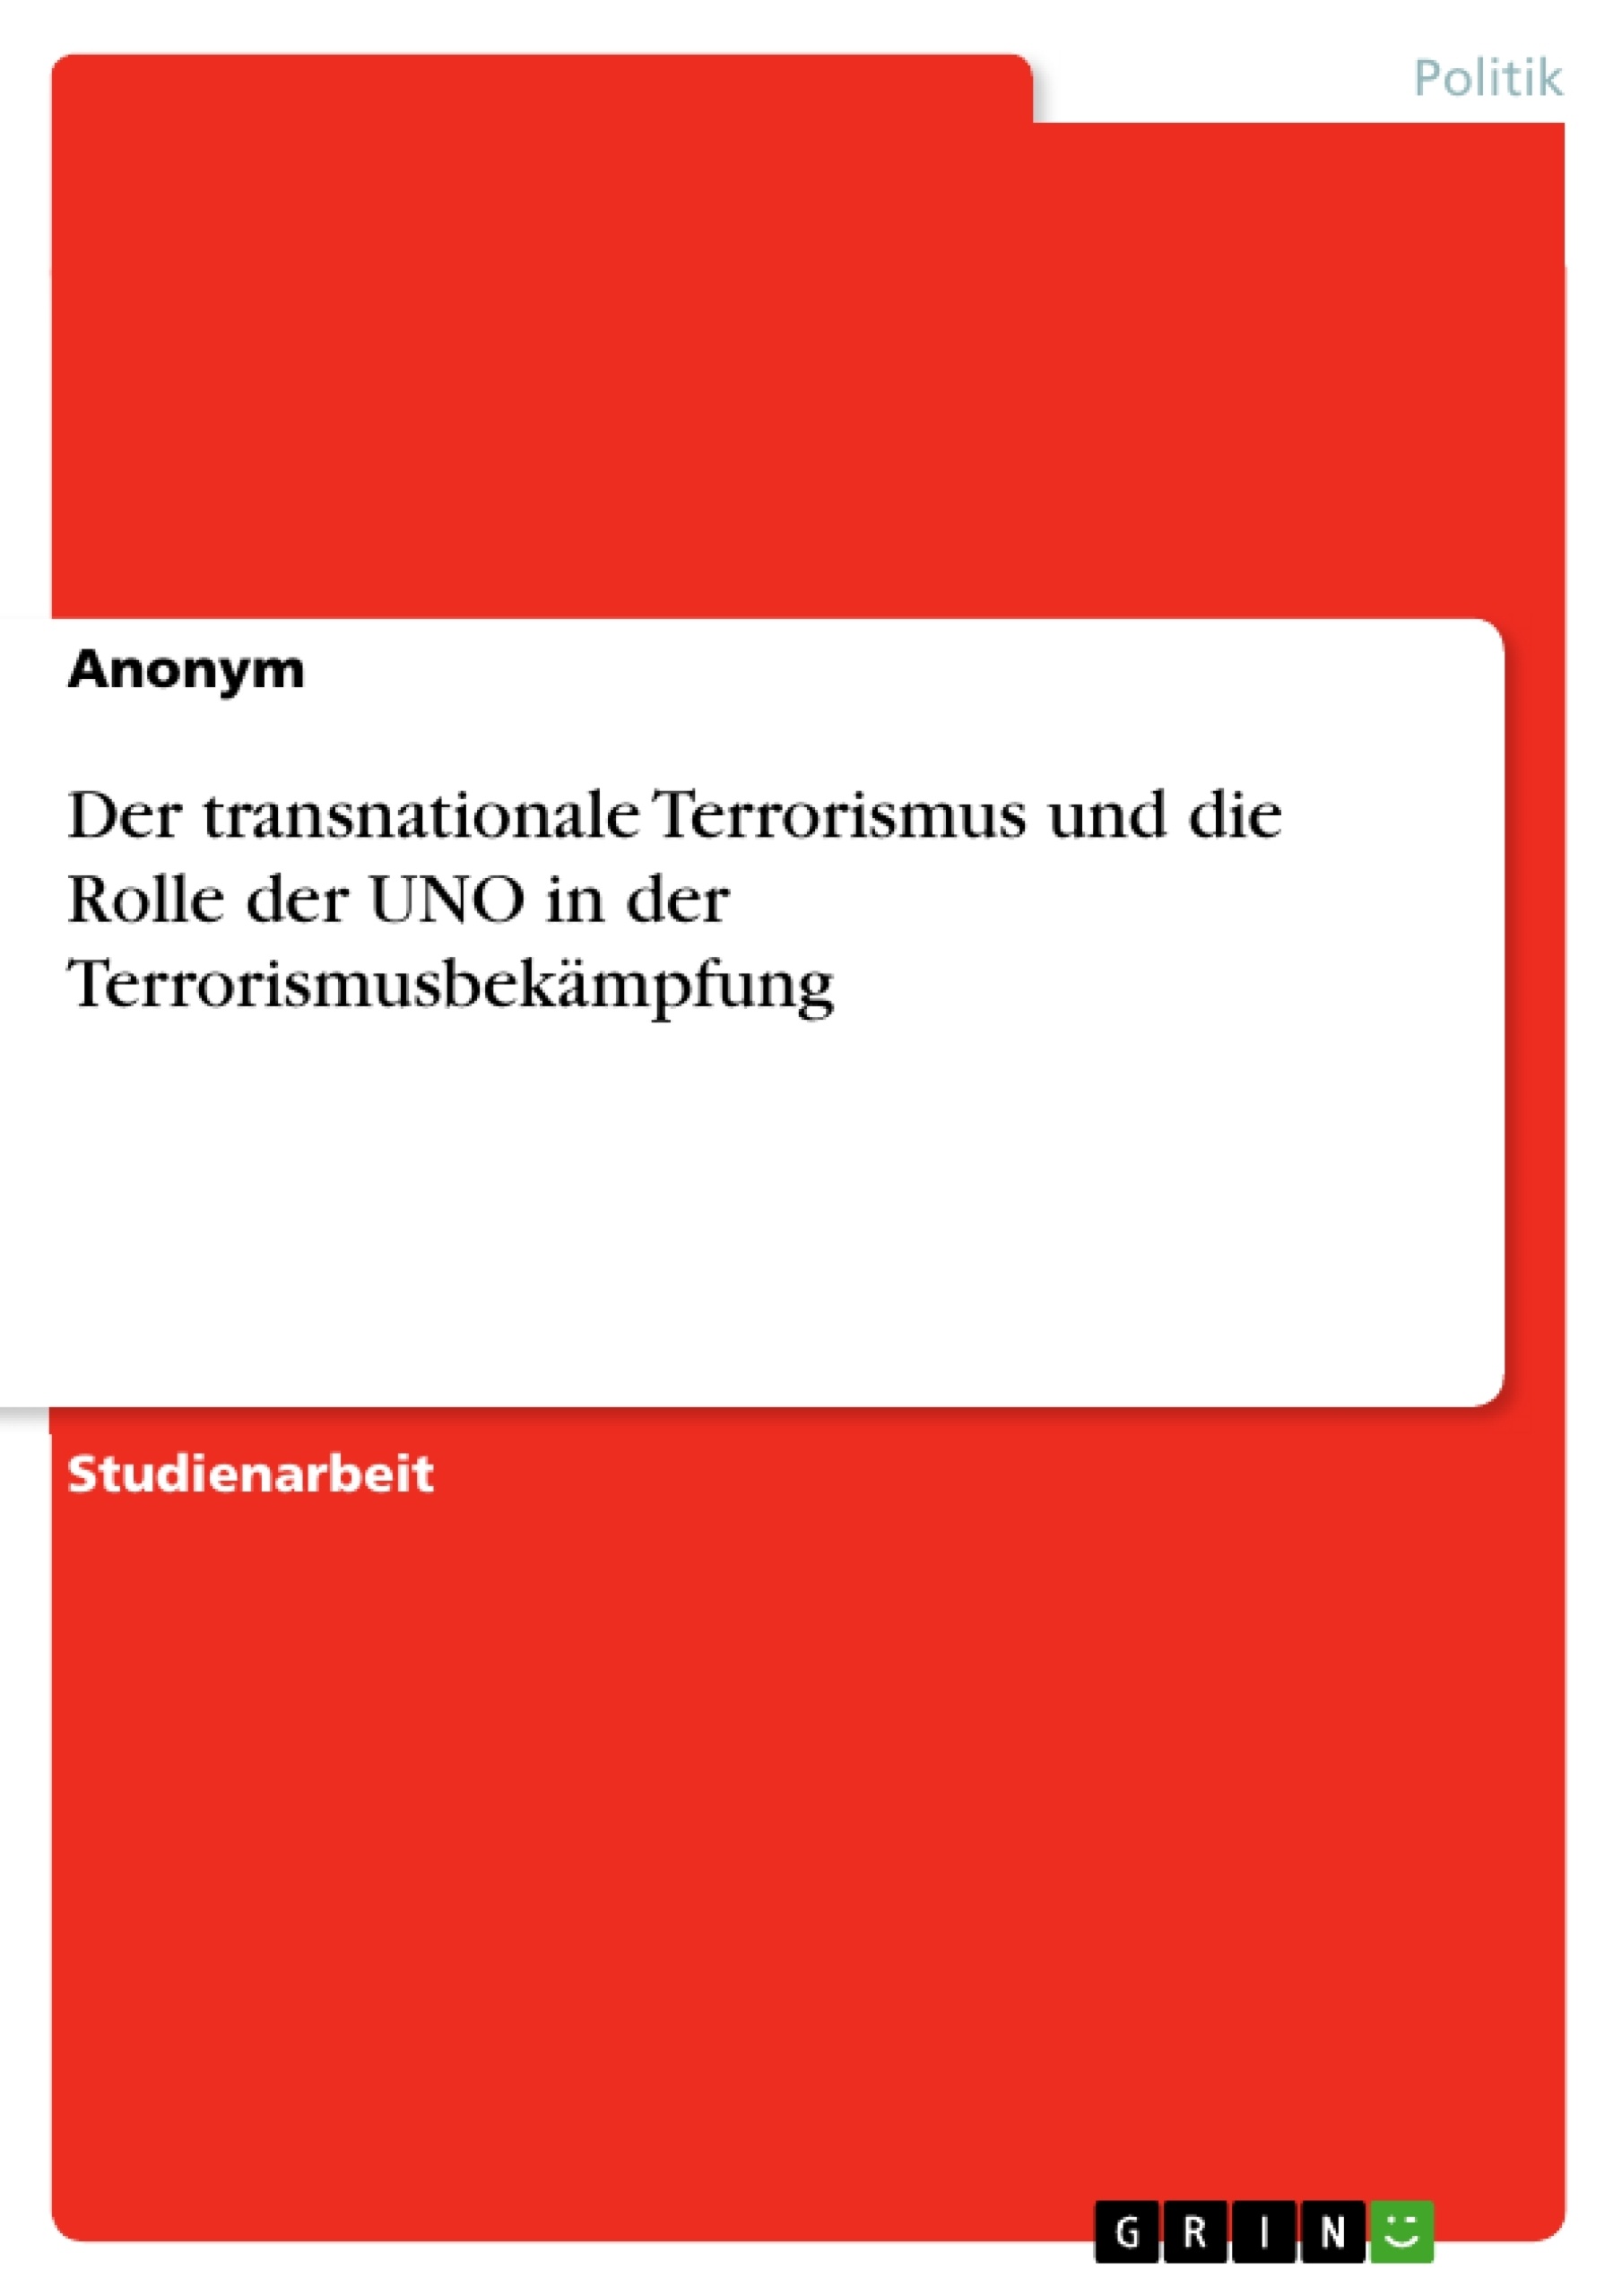 Title: Der transnationale Terrorismus und die Rolle der UNO in der Terrorismusbekämpfung